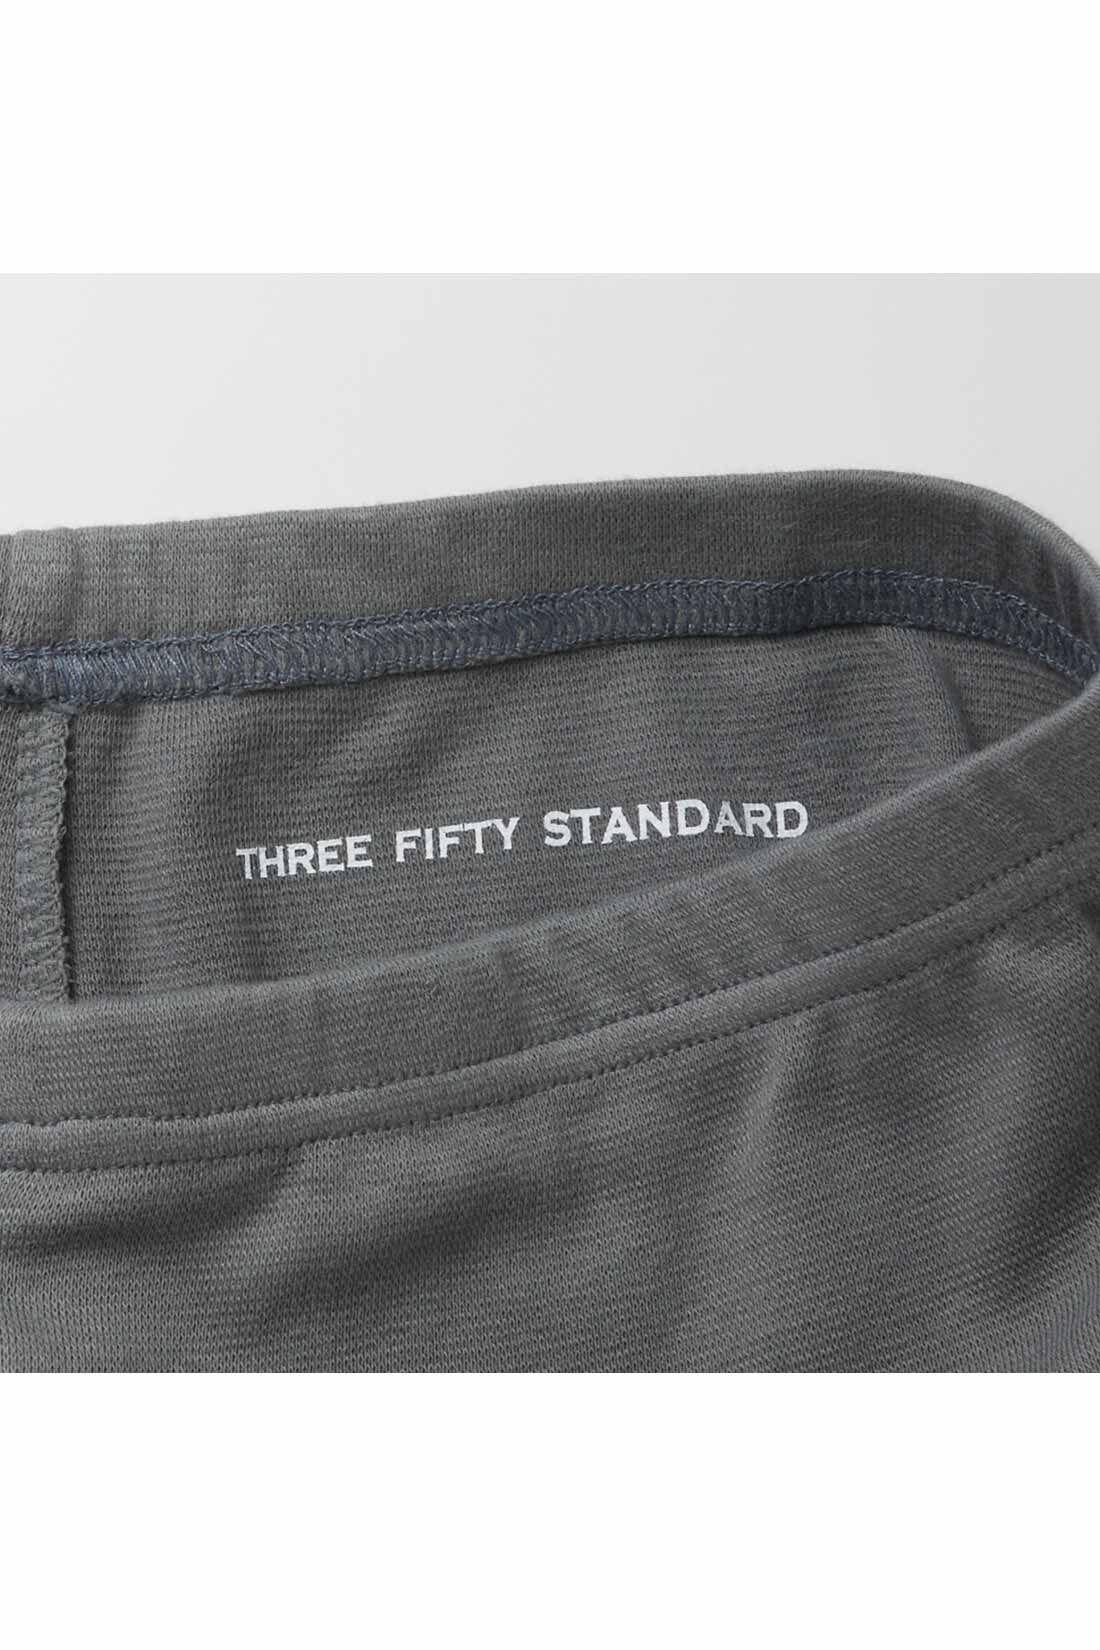 THREE FIFTY STANDARD|THREE FIFTY STANDARD フライス編みの心地いいレギンスの会|ブランドロゴはプリントで裏側に入れてさりげなく。